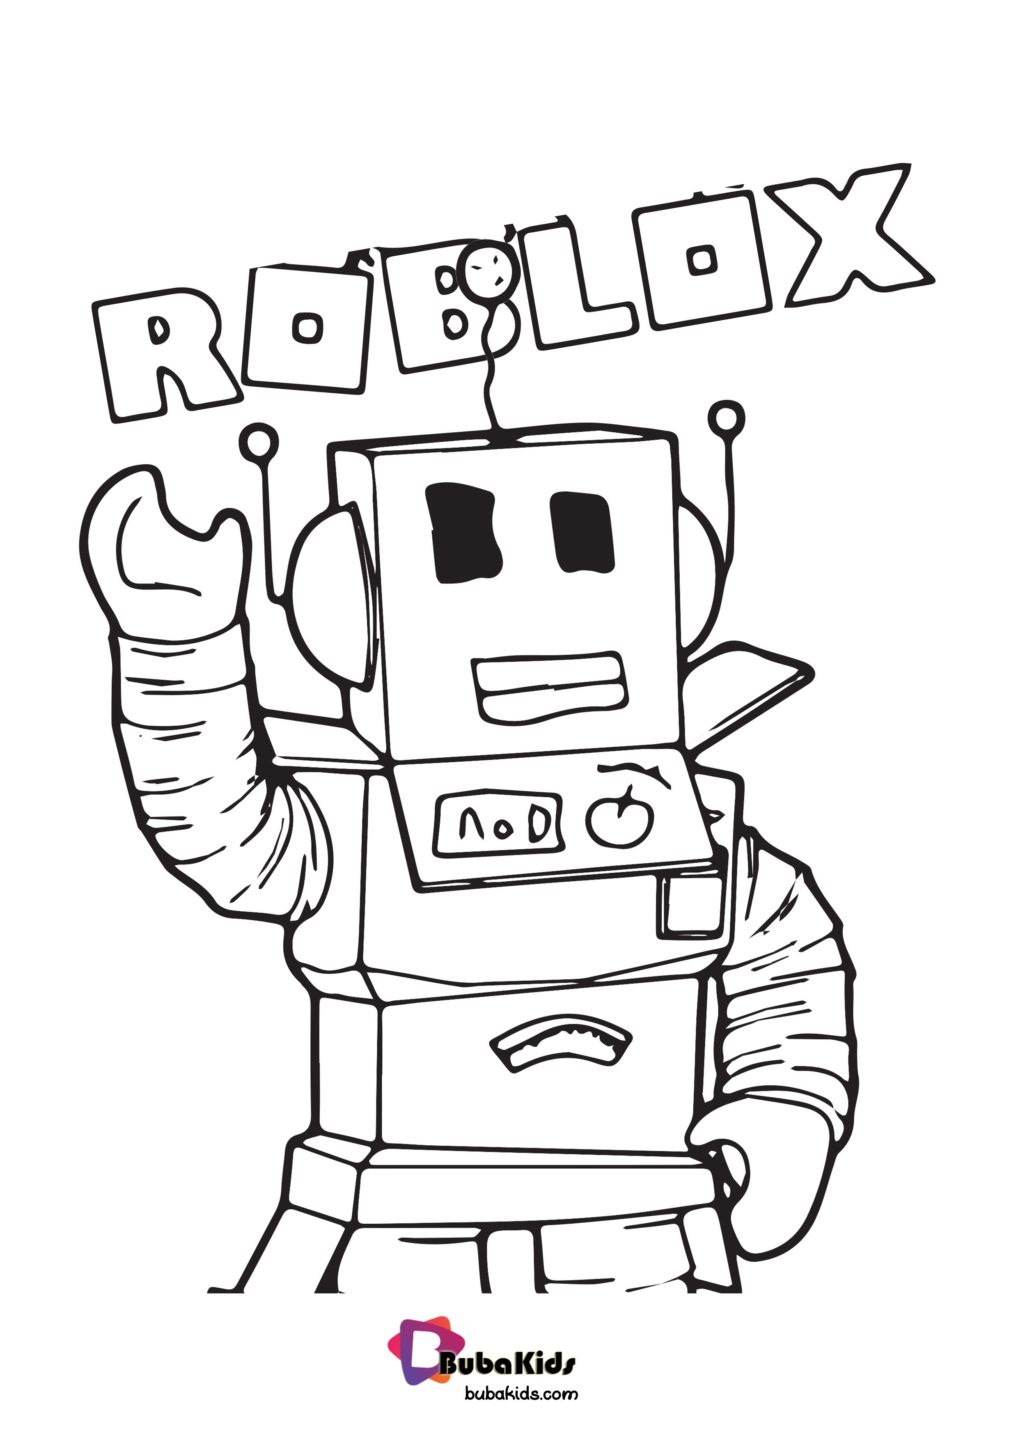 Roblox Printables Free